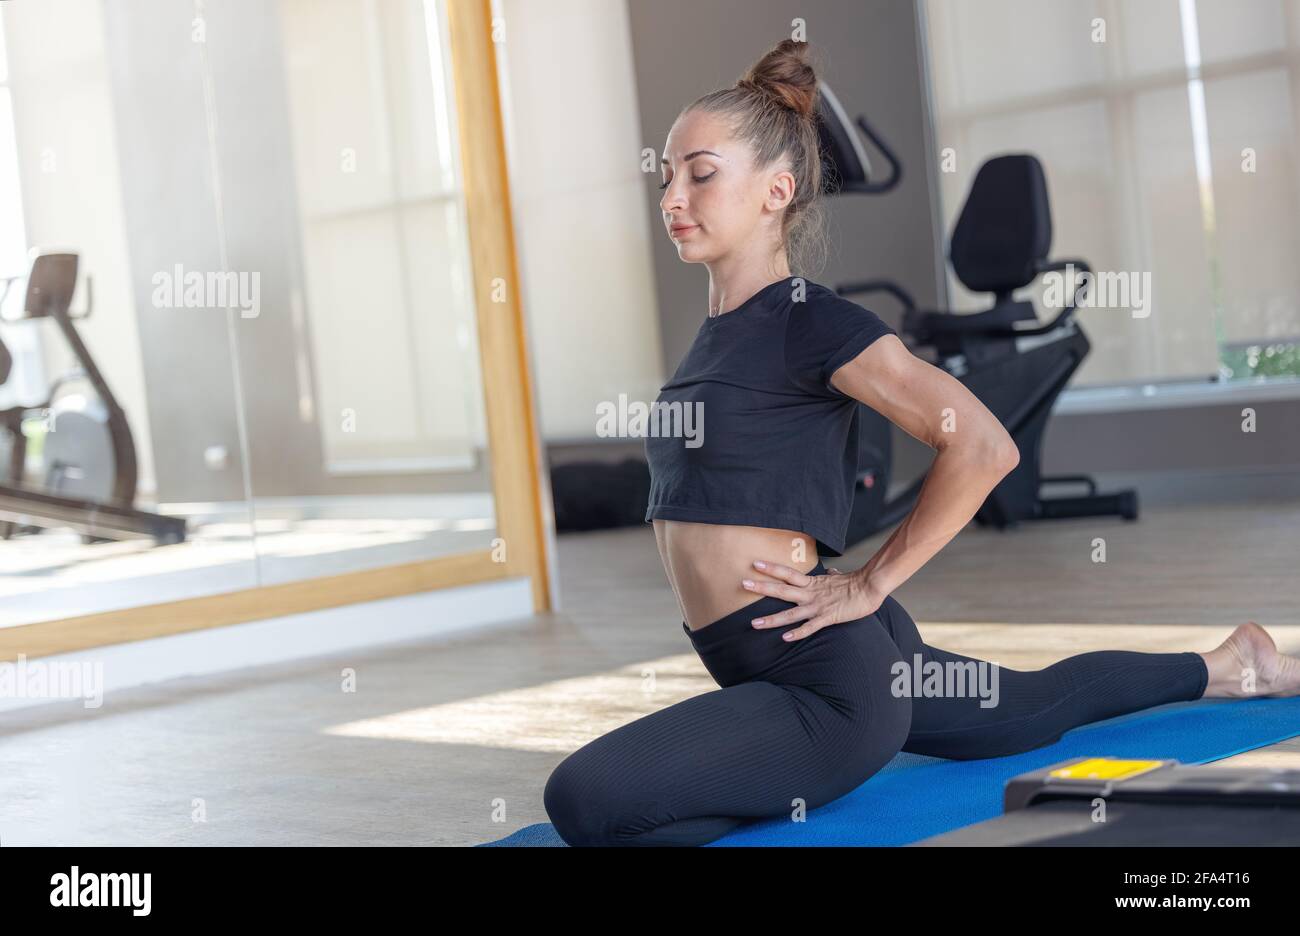 Schöne Fit Frau macht Yoga-Plank und beobachten Online-Tutorials Auf dem Laptop Übungen im Fitnessraum oder Fitnessraum gesunden Lebensstil Konzept Stockfoto